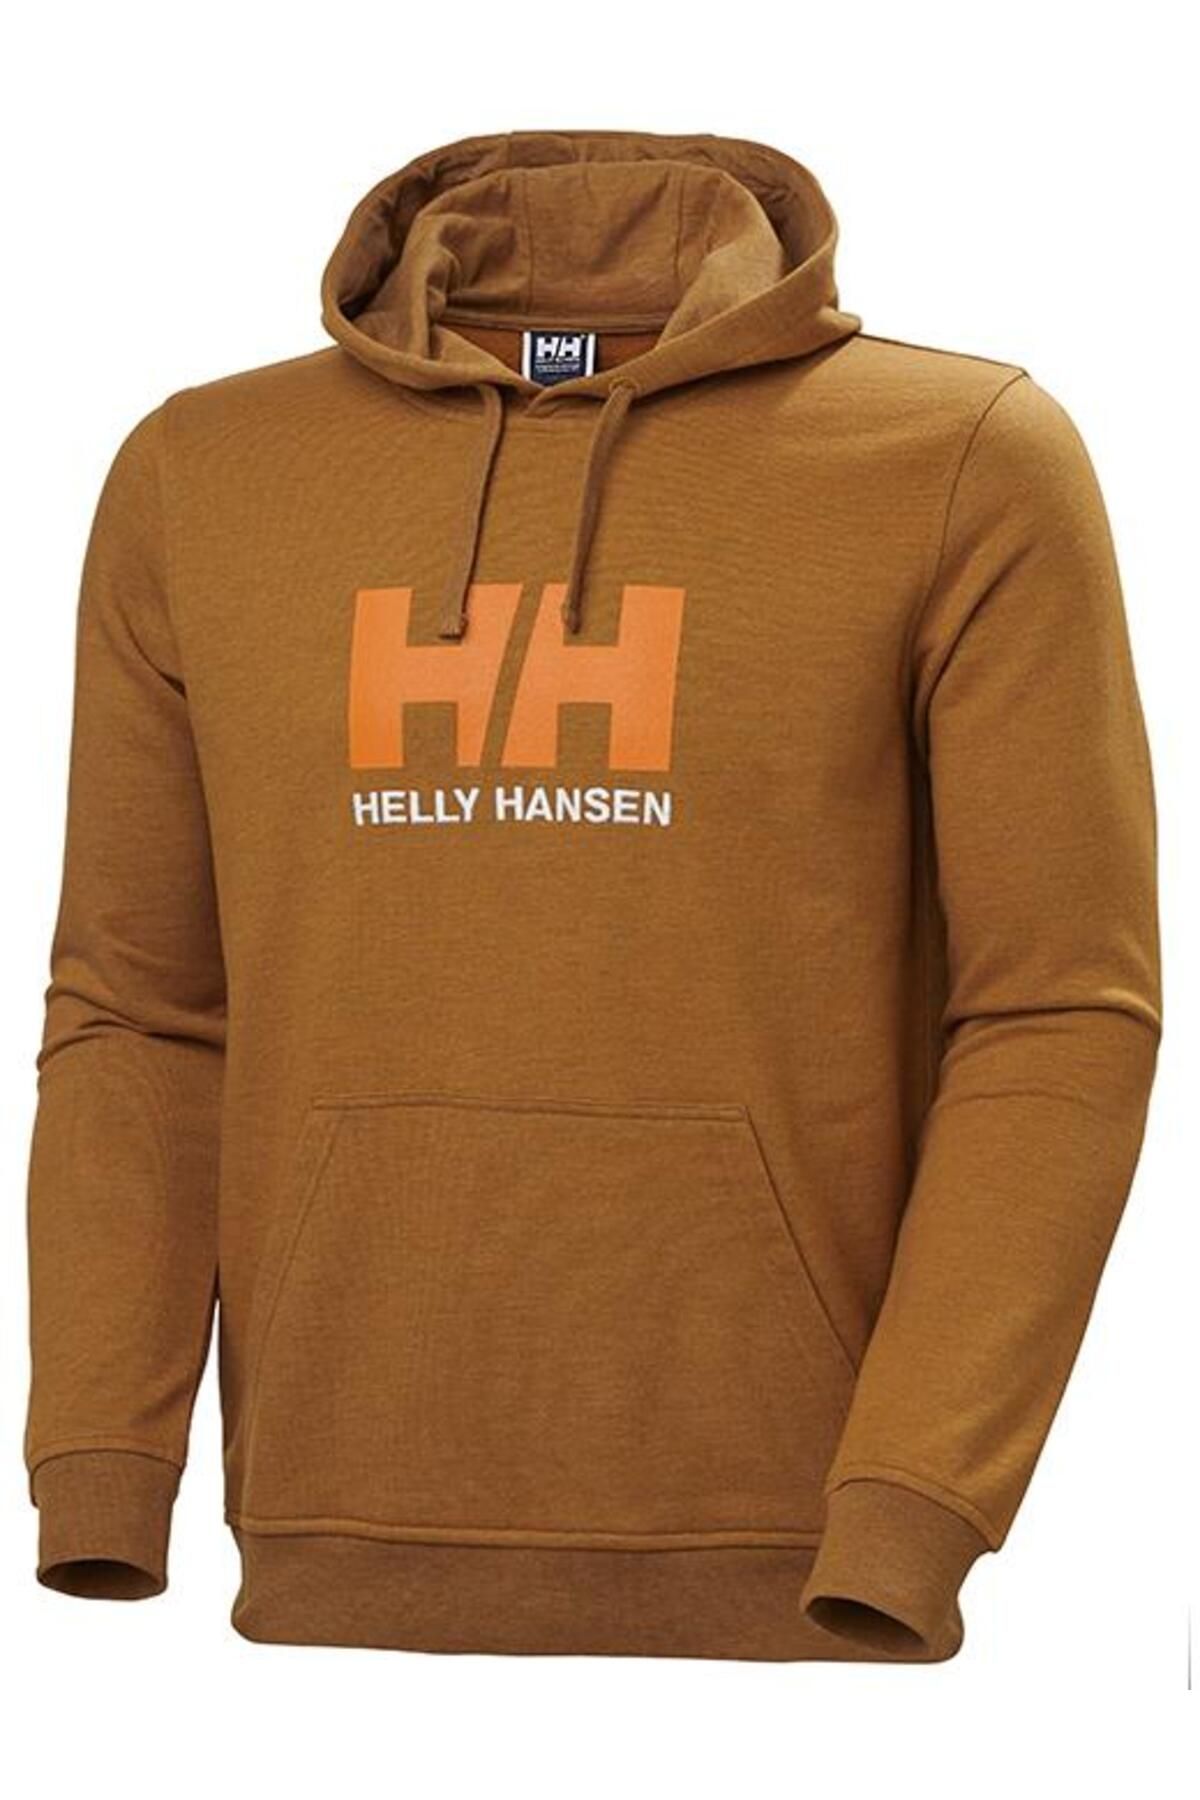 Helly Hansen Hh Hh Logo Hoodie